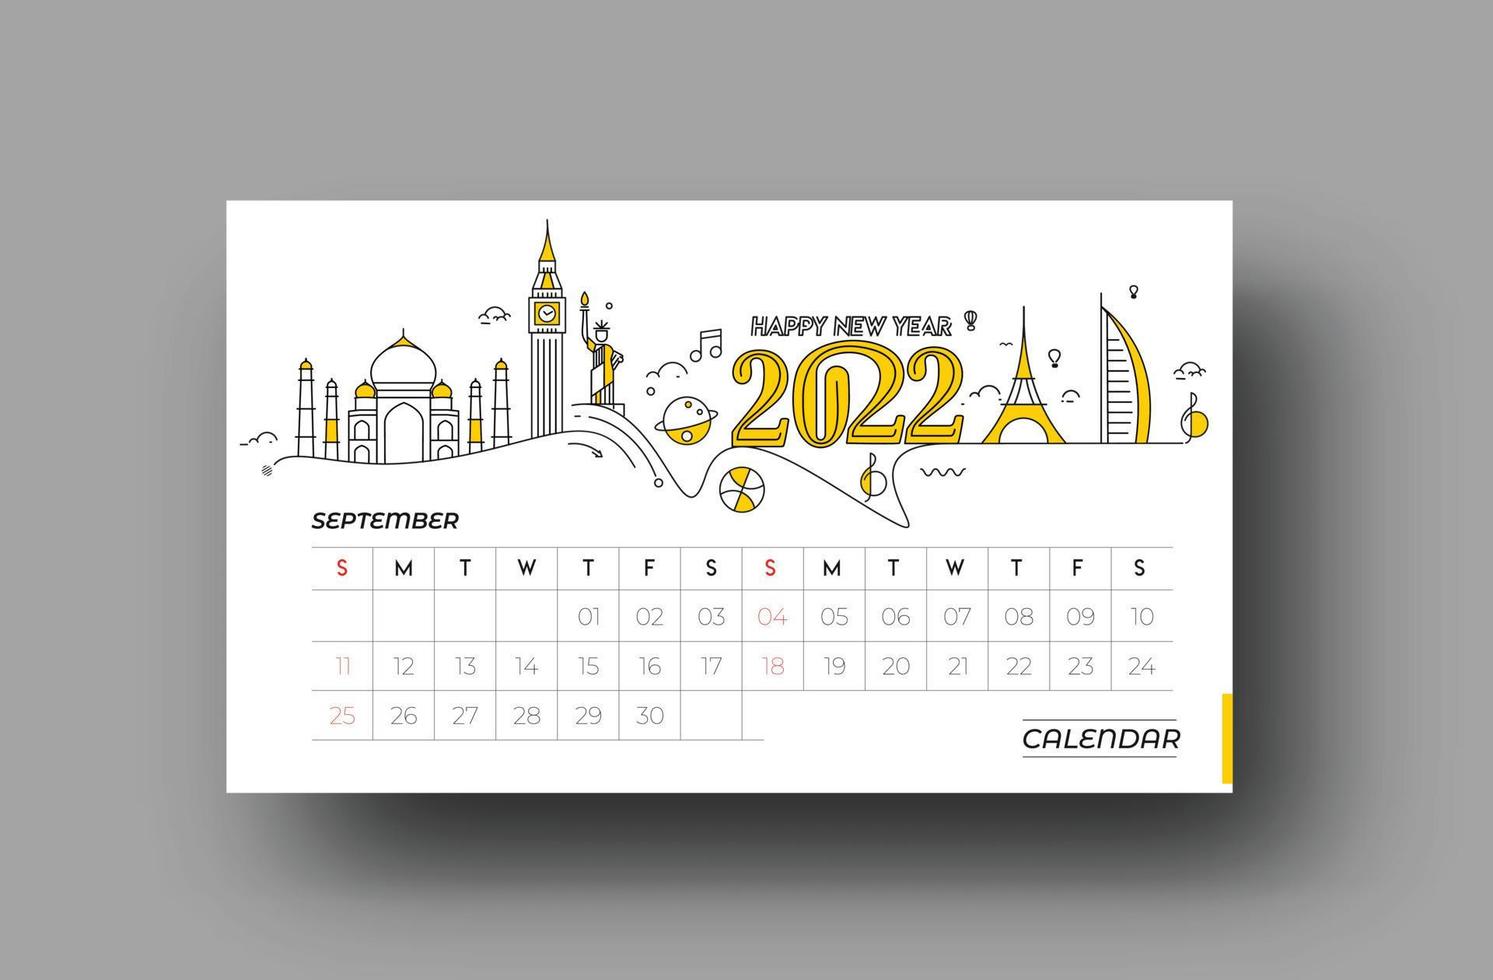 felice anno nuovo 2022 calendario febbraio - elementi di design per le vacanze di capodanno per biglietti di auguri, poster banner calendario per decorazioni, sfondo illustrazione vettoriale. vettore